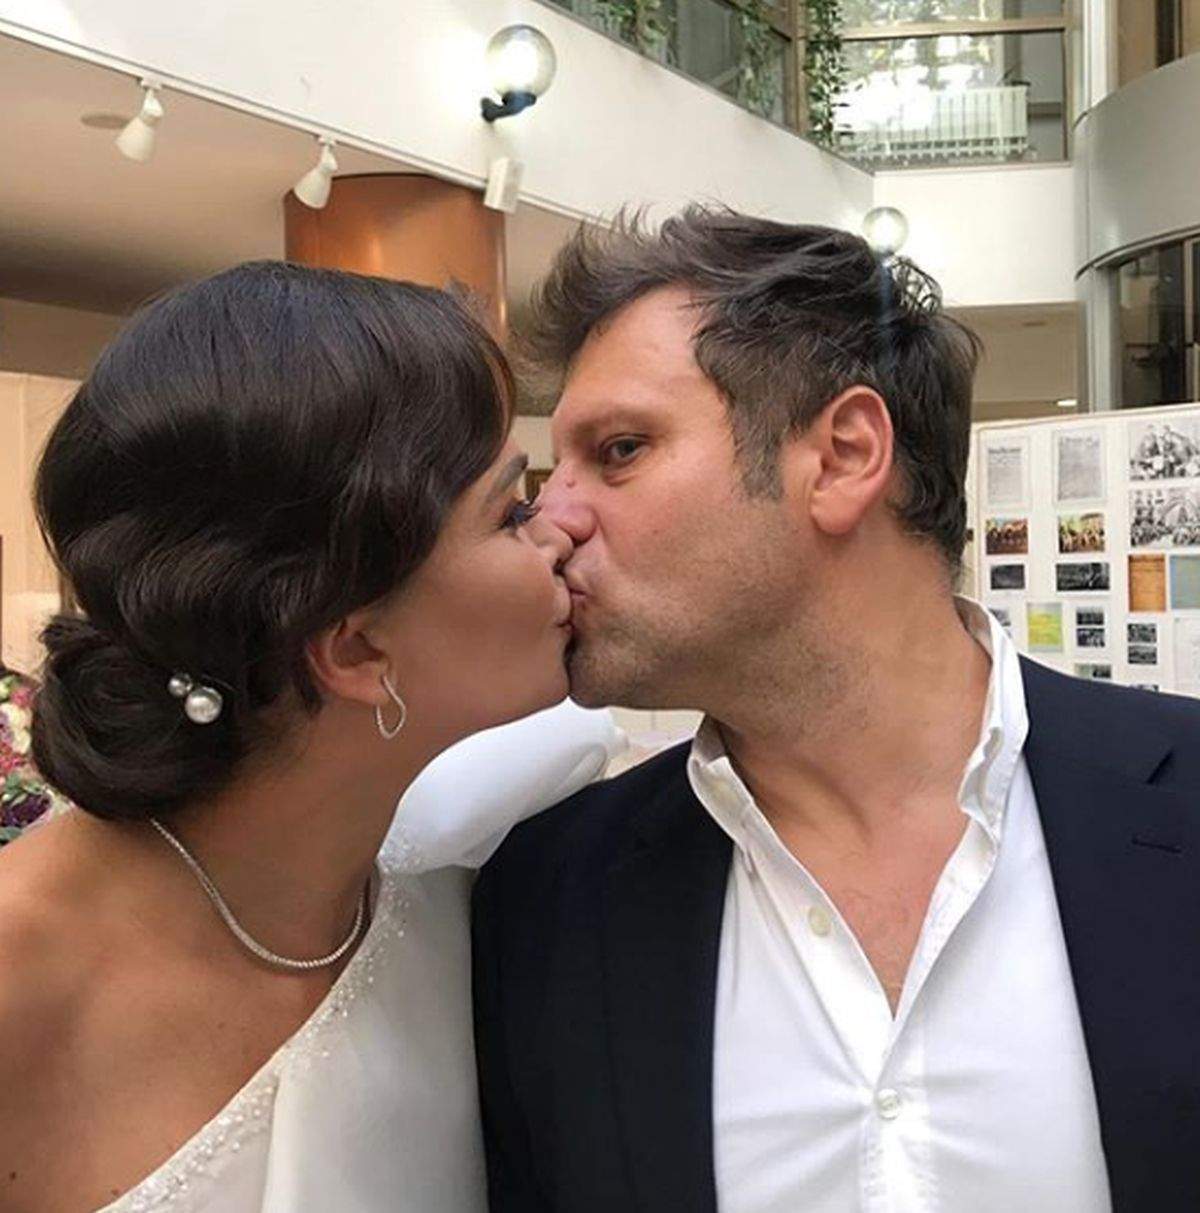 Nuntă mare în showbiz. Alina Pușcaș se căsătorește religios cu tatăl celor trei copii ai săi, Mihai Stoenescu. Când va avea loc evenimentul